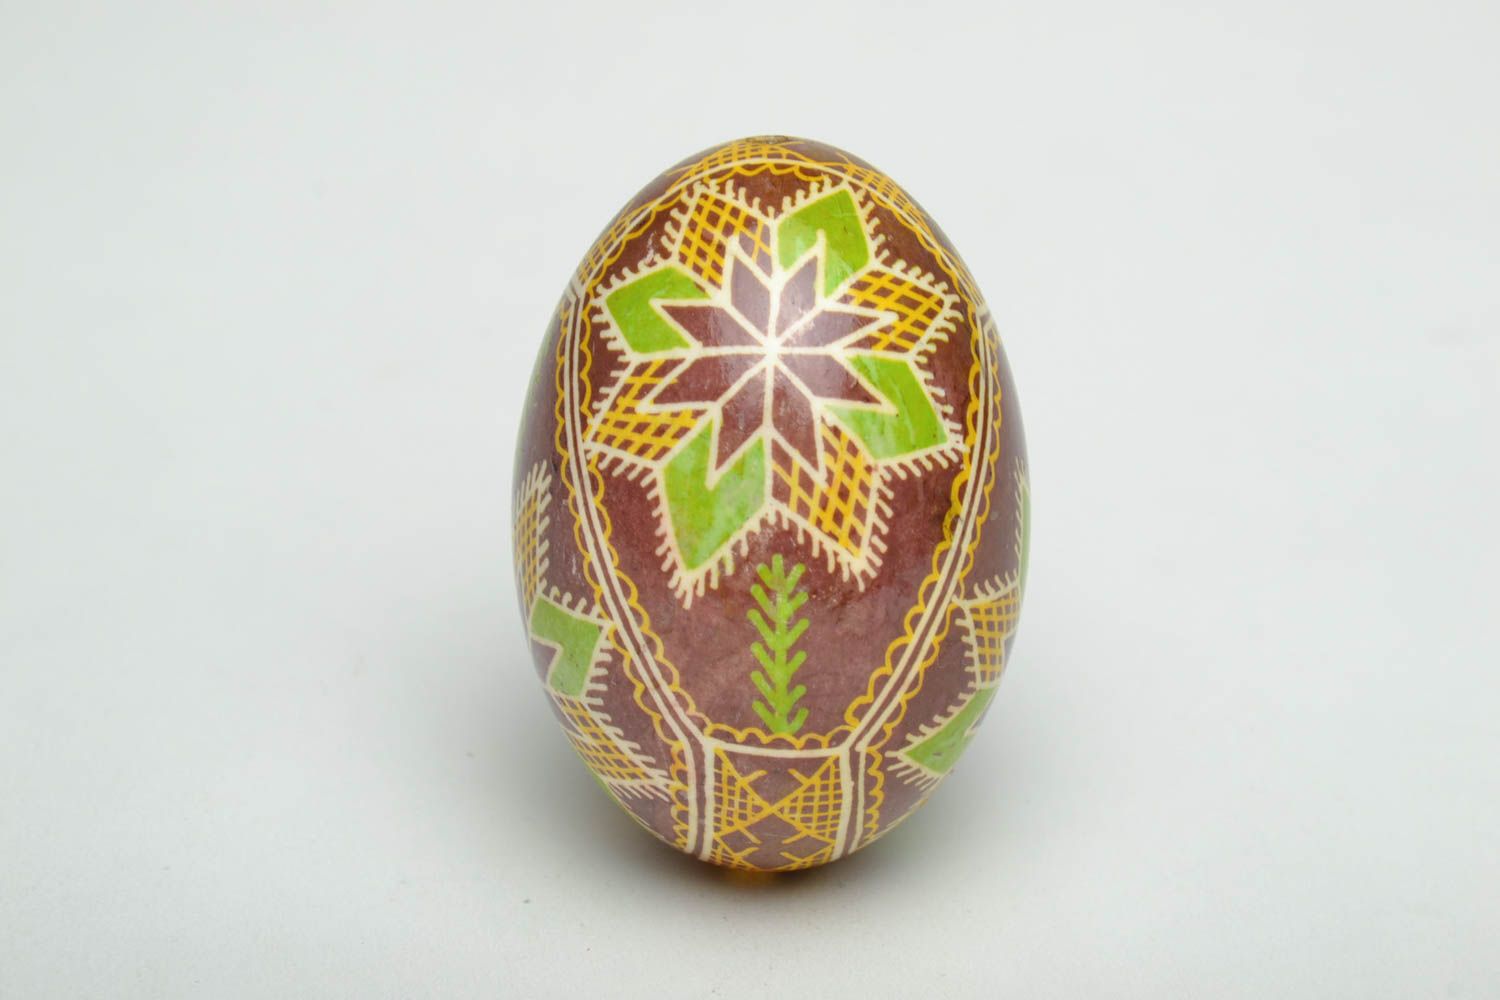 Oeuf de Pâques fait main avec ornements ethniques peints de colorants d'aniline photo 3